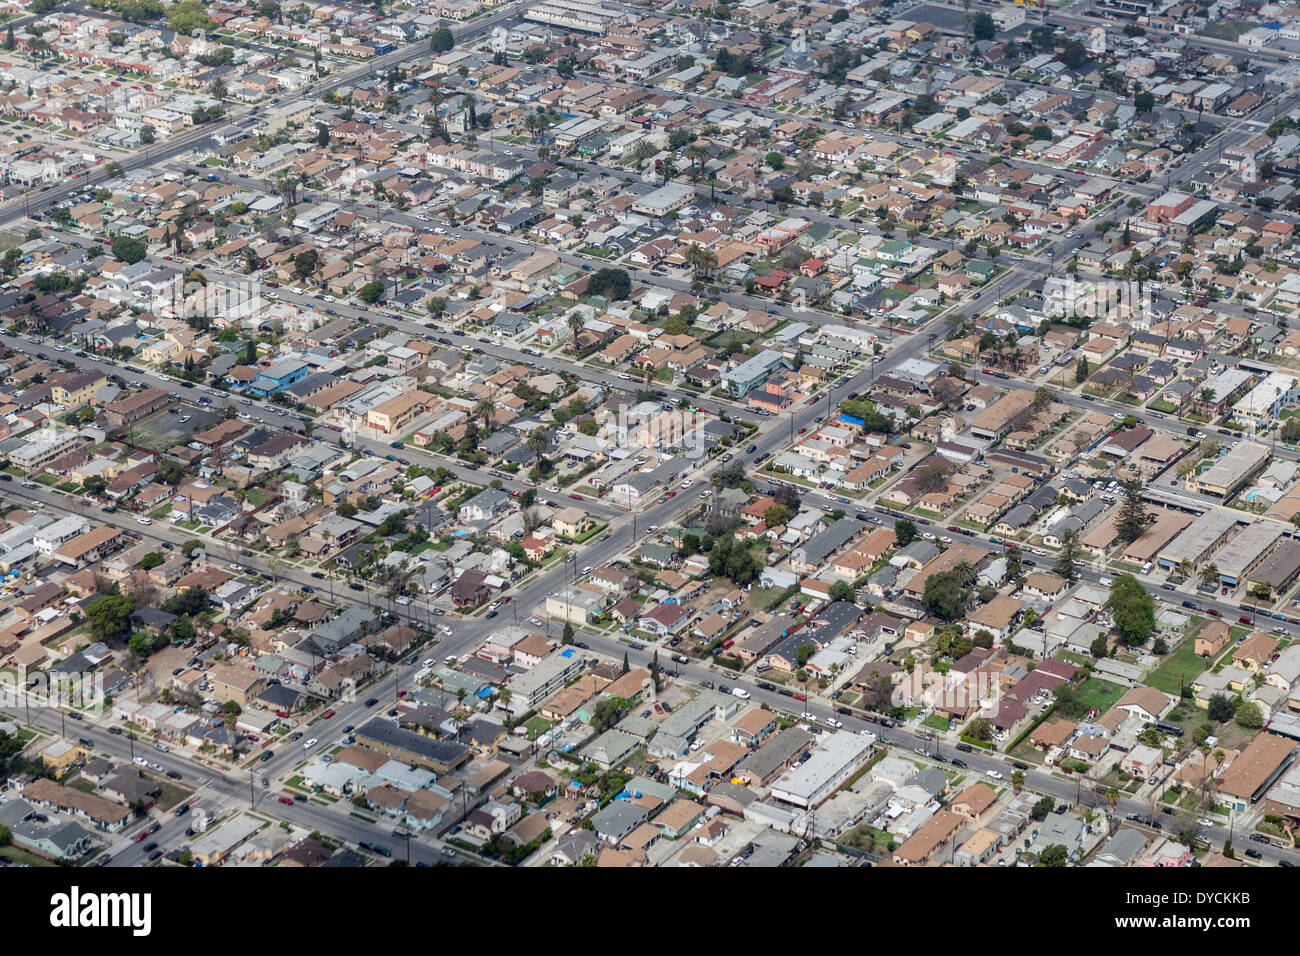 Antena de alta densidad de viviendas de bajos ingresos en el sur centro de Los Angeles. Foto de stock